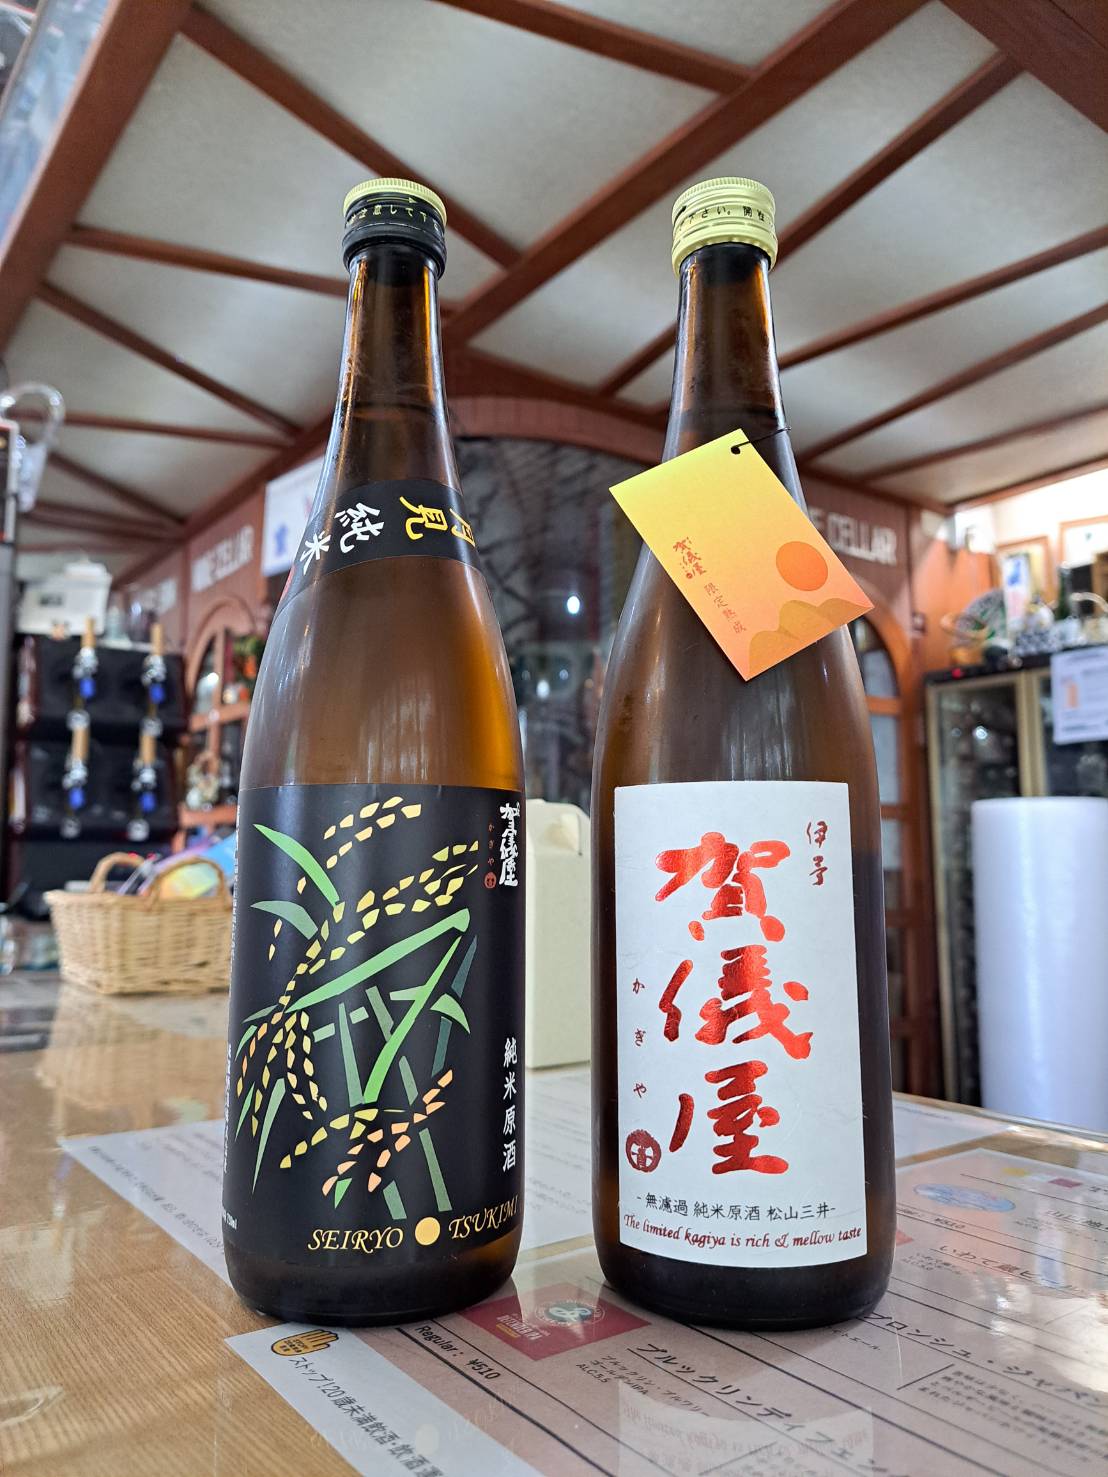 『愛媛県の成龍酒造さんから秋の限定酒が入荷してきました』